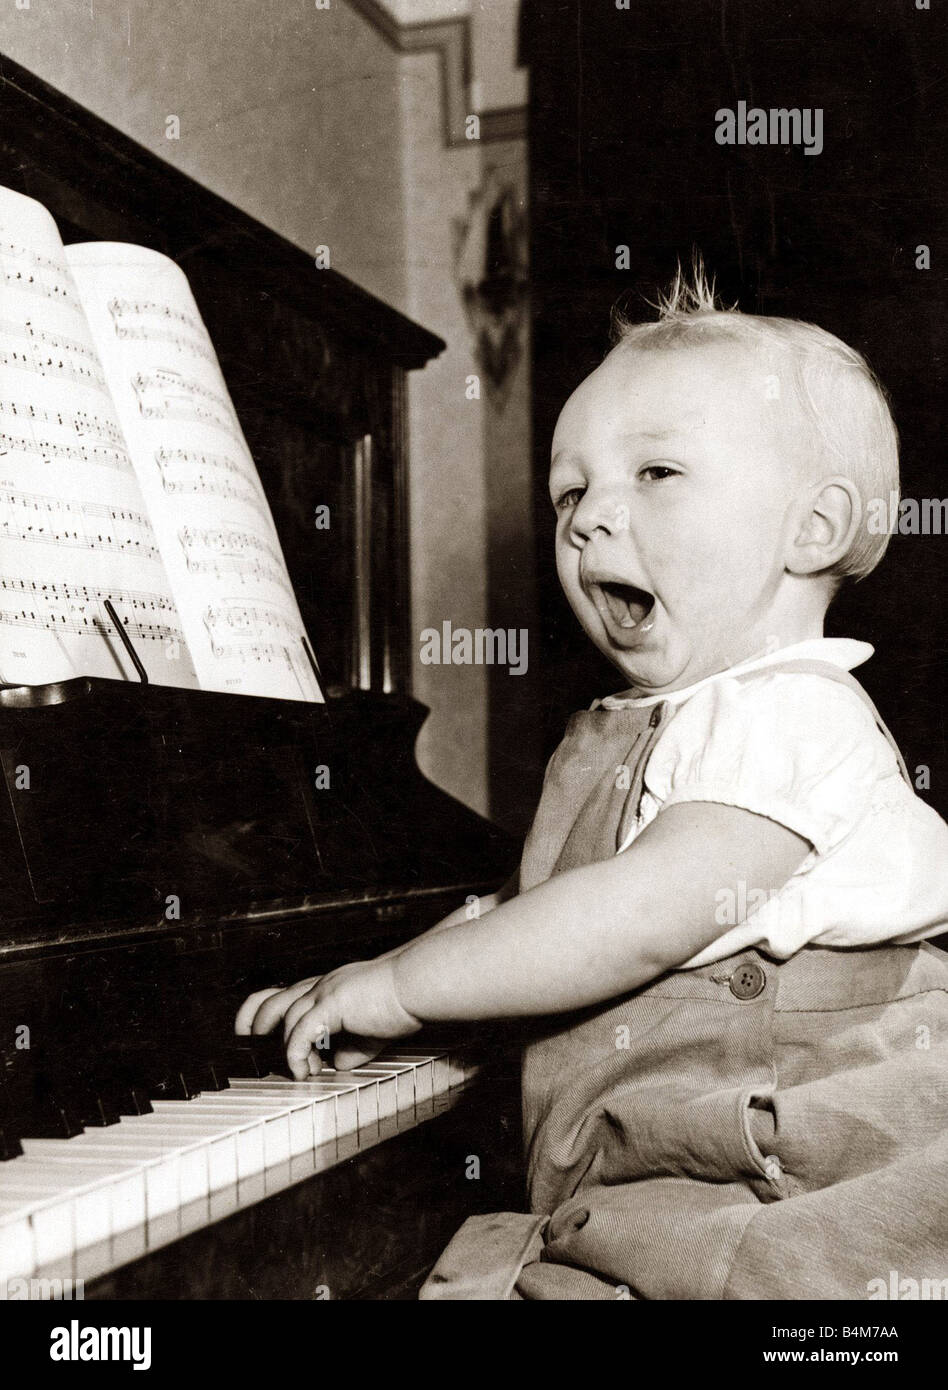 Un jeune musicien au cours de la pratique vers 1950 Banque D'Images